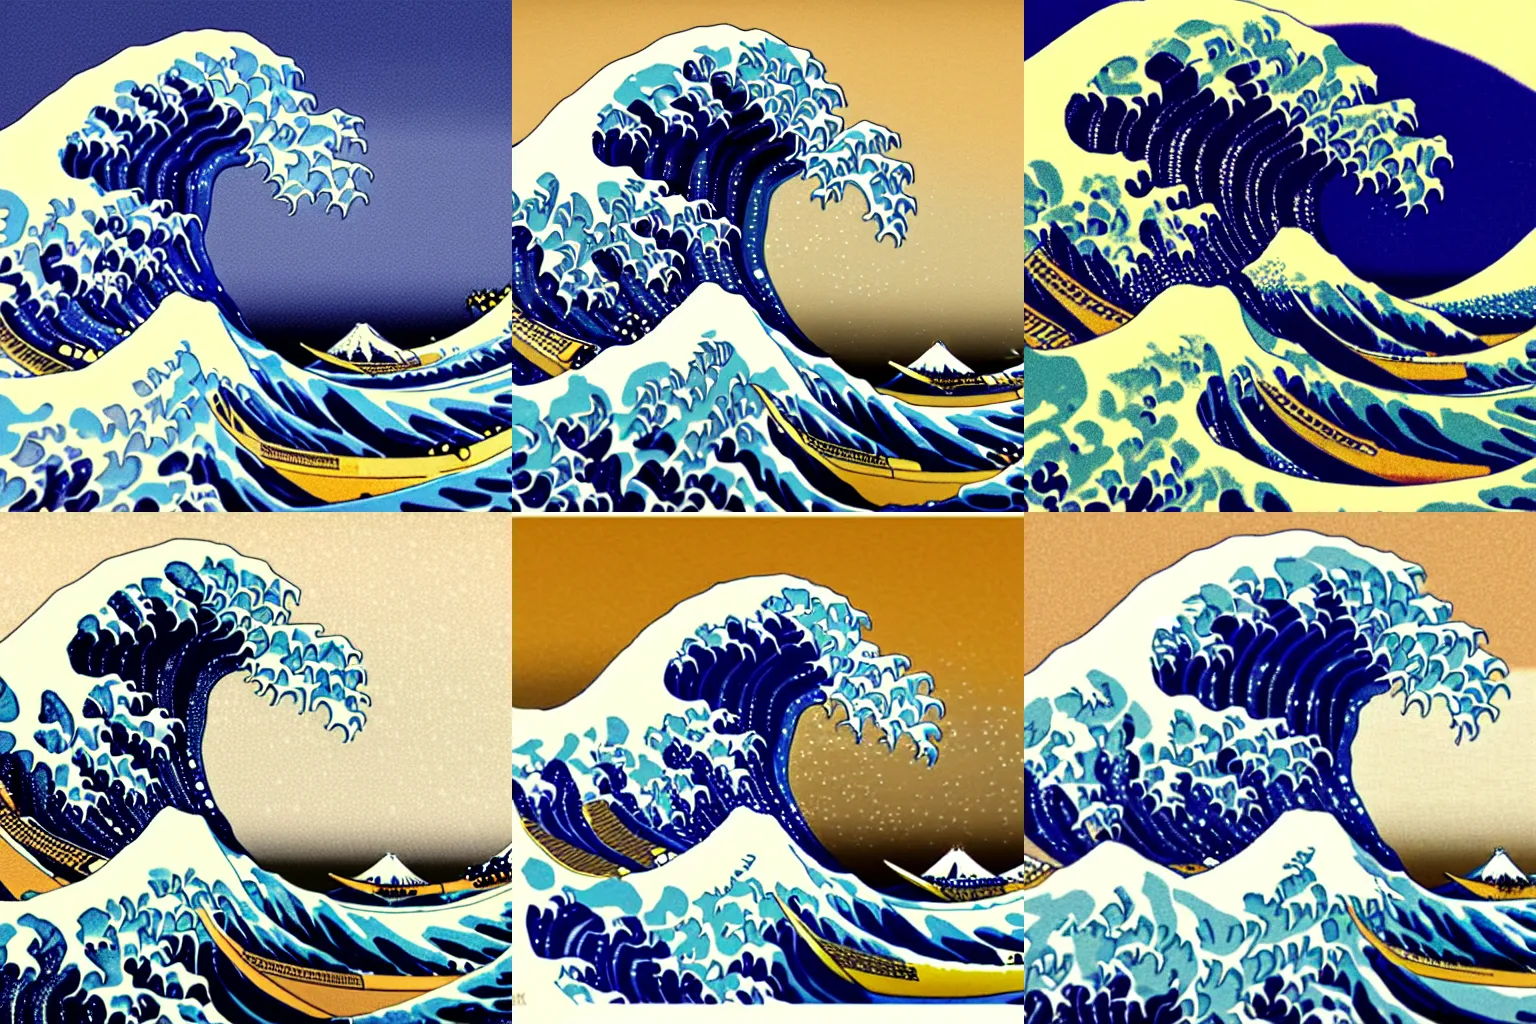 Prompt: great wave off kanagawa, digital art,